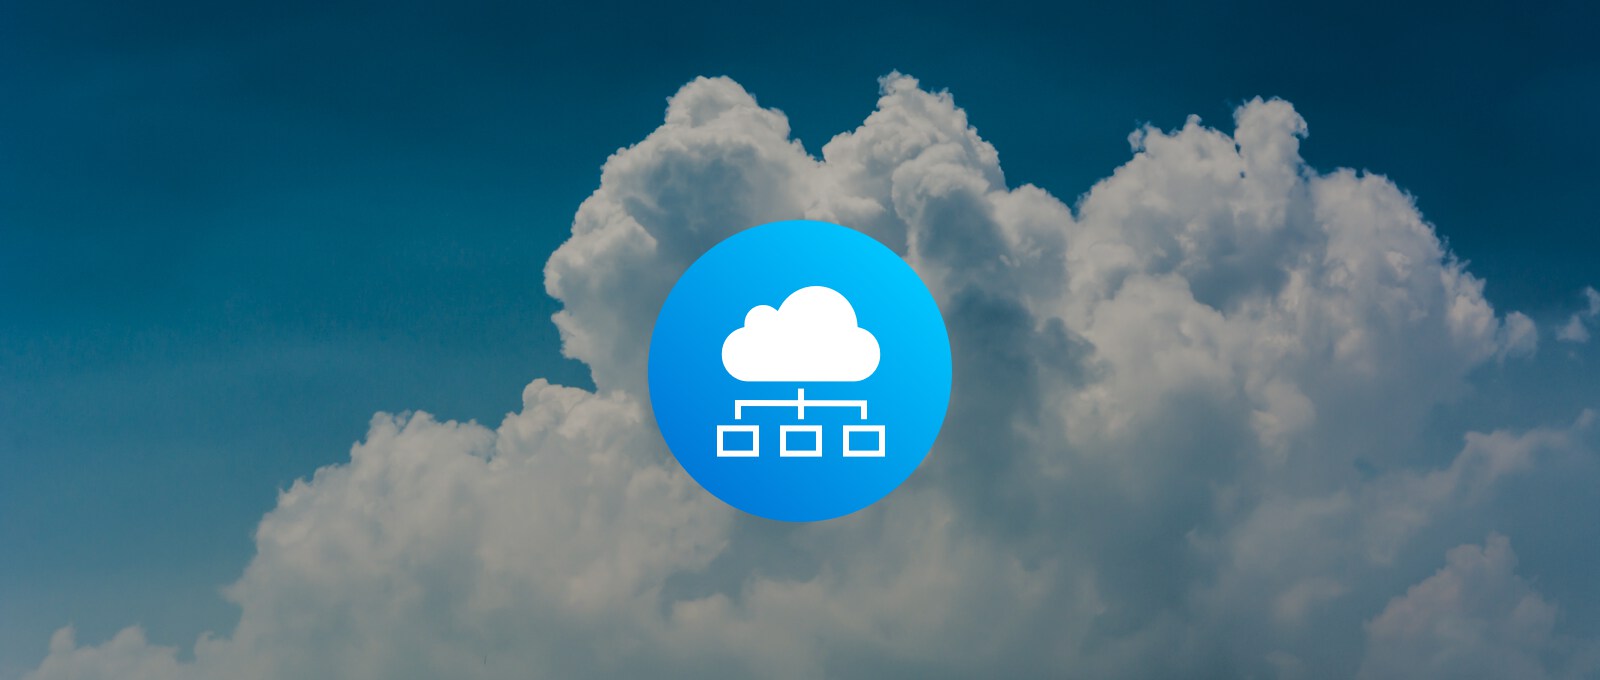 Cloud Architektur Icon auf einem Foto von Wolken im Himmel